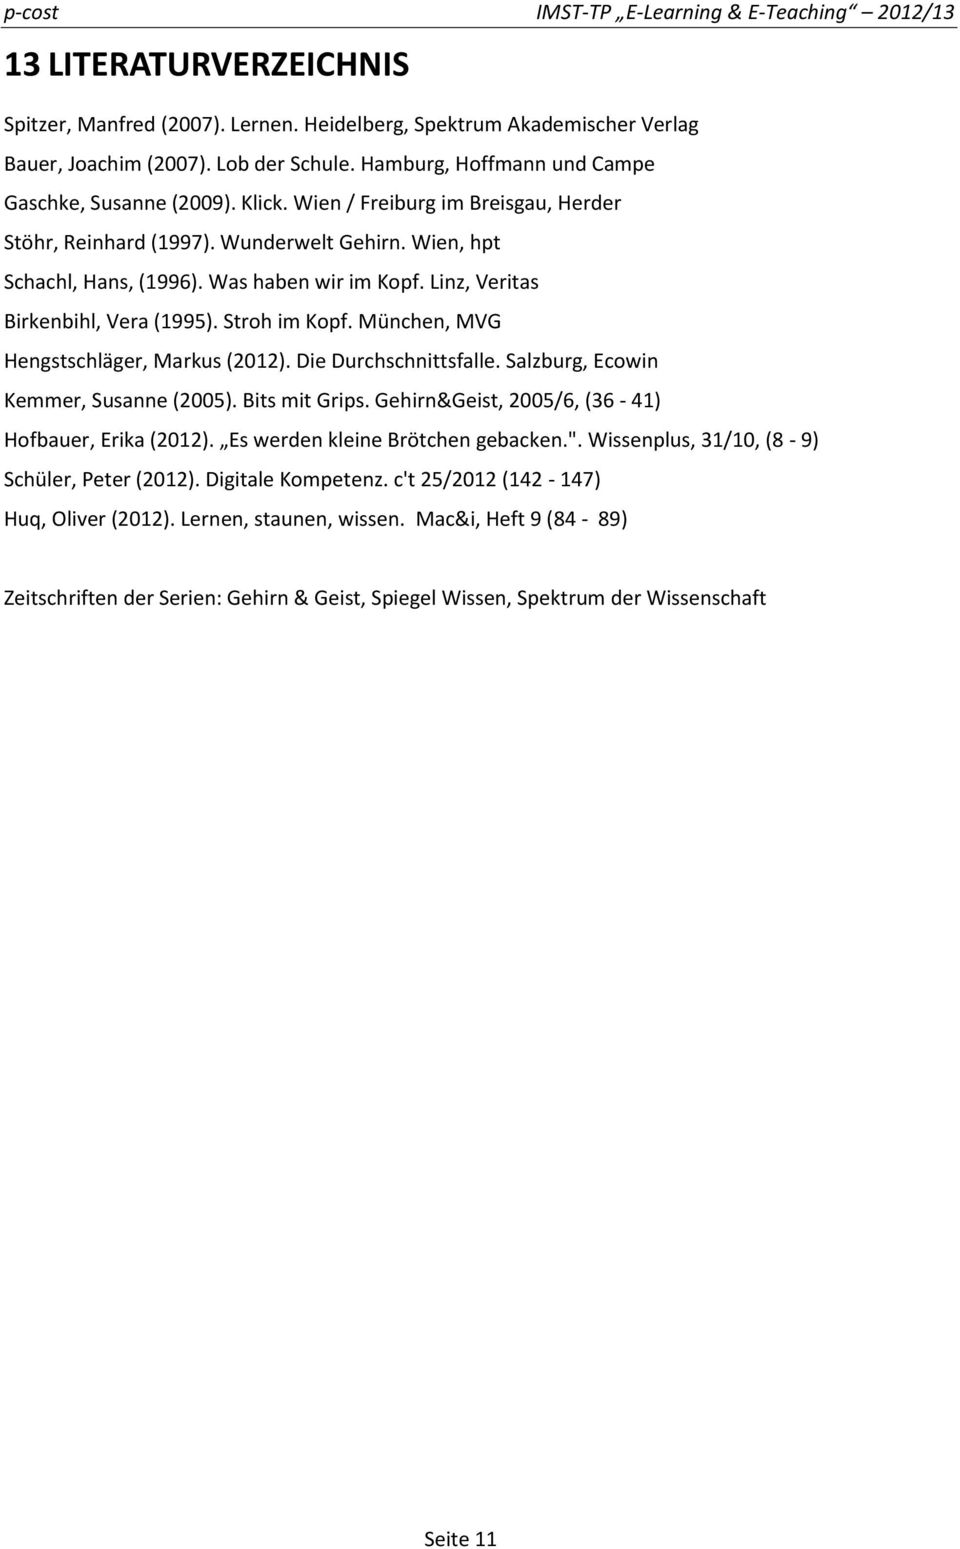 München, MVG Hengstschläger, Markus (2012). Die Durchschnittsfalle. Salzburg, Ecowin Kemmer, Susanne (2005). Bits mit Grips. Gehirn&Geist, 2005/6, (36-41) Hofbauer, Erika (2012).